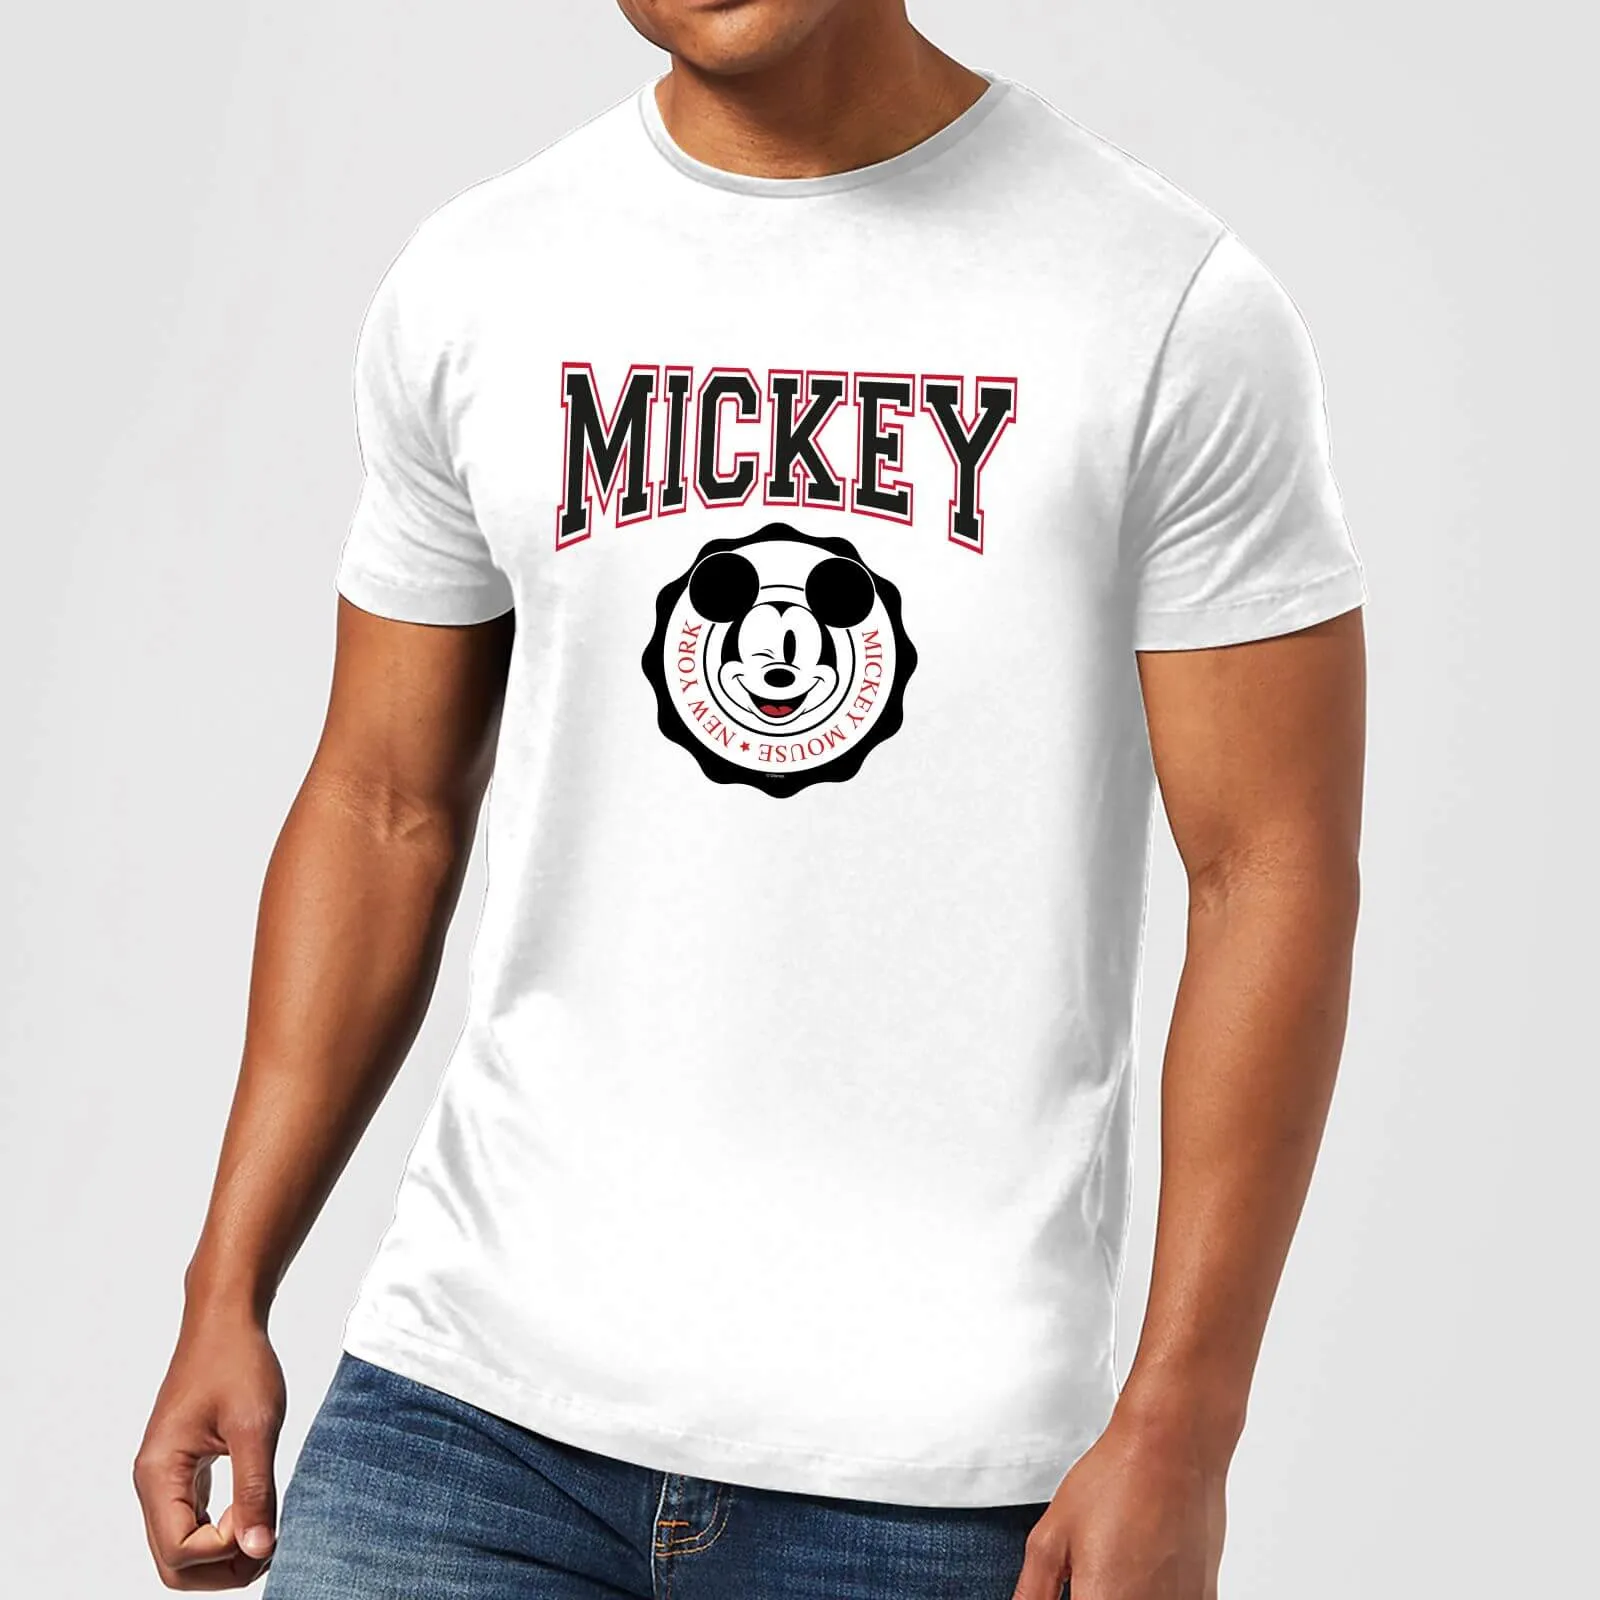  Mickey New York Men's T-Shirt - White - S